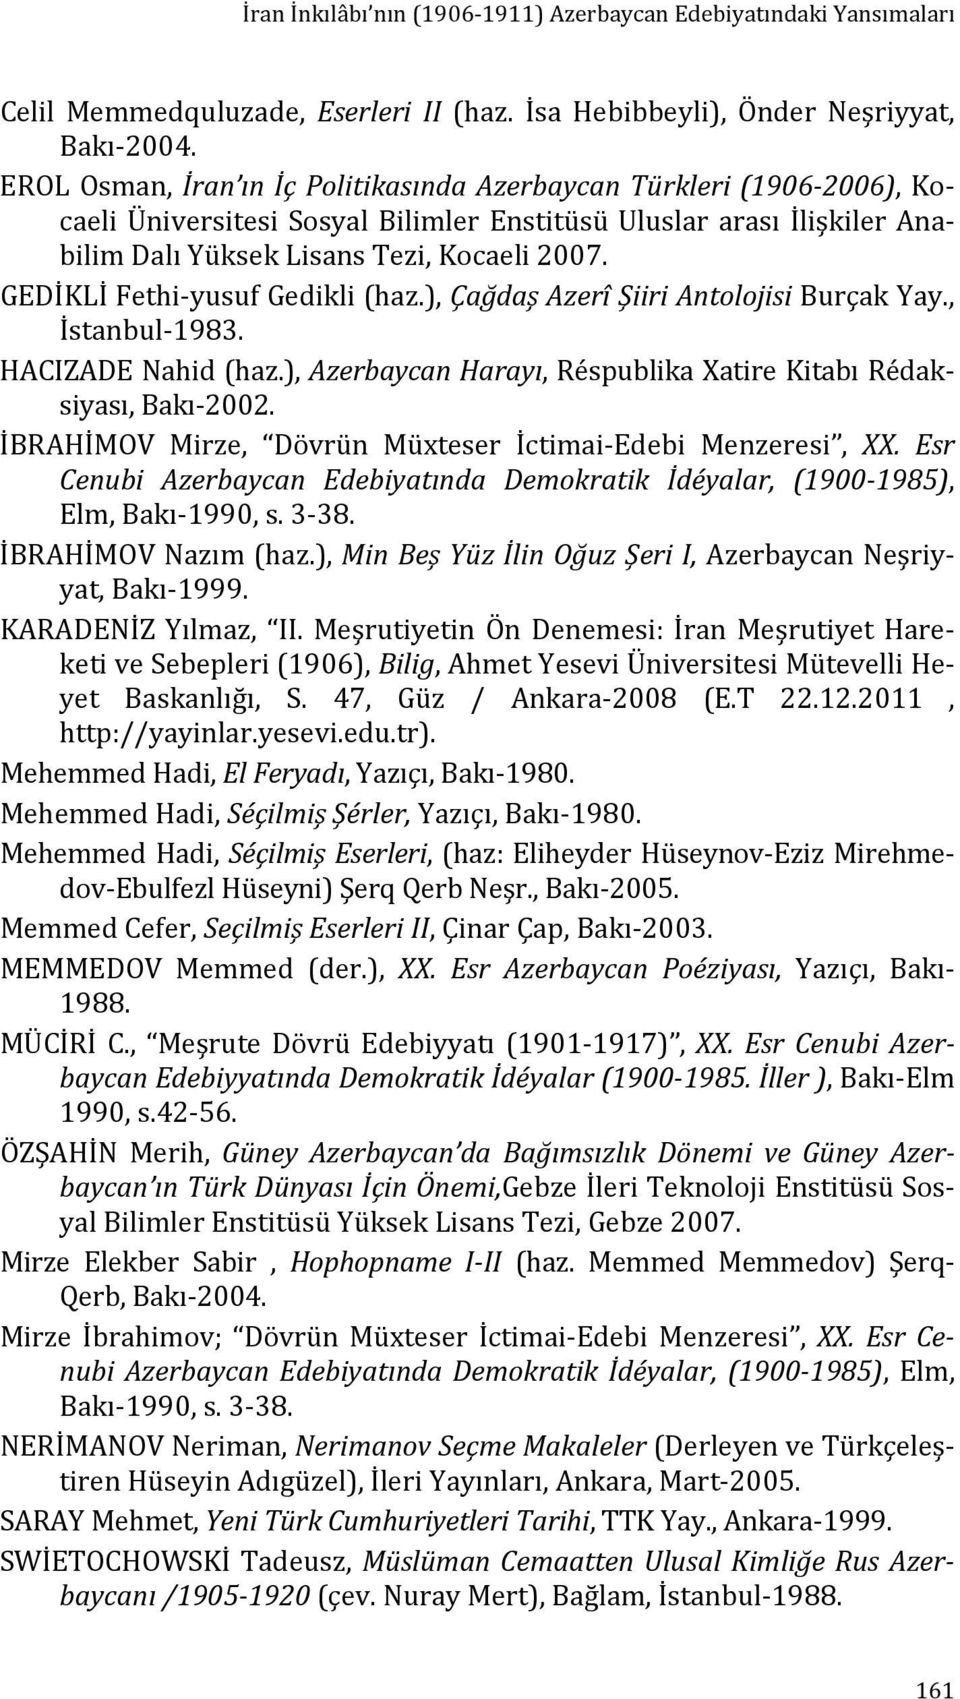 GEDİKLİ Fethi yusuf Gedikli (haz.), Çağdaş Azerî Şiiri Antolojisi Burçak Yay., İstanbul 1983. HACIZADE Nahid (haz.), Azerbaycan Harayı, Réspublika Xatire Kitabı Rédaksiyası, Bakı 2002.